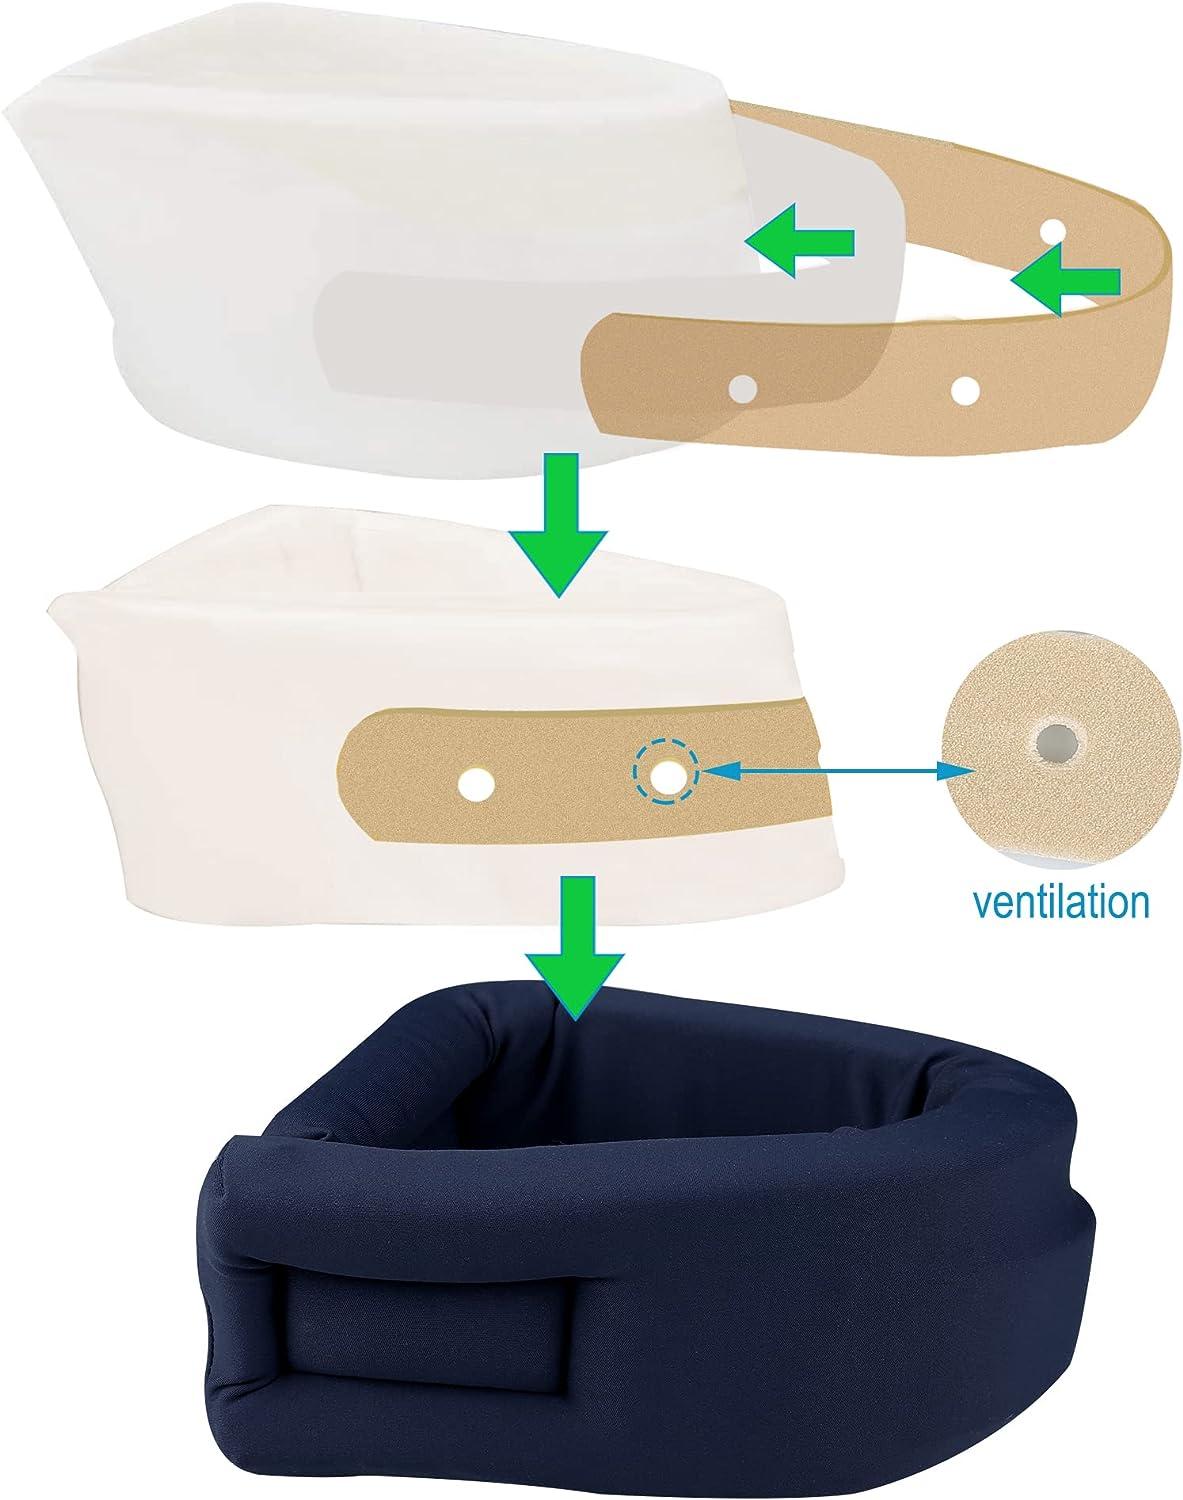 Neck Brace Cervical Support Adjustable Sofe Sponge Improve Sleep Travel  Pillow